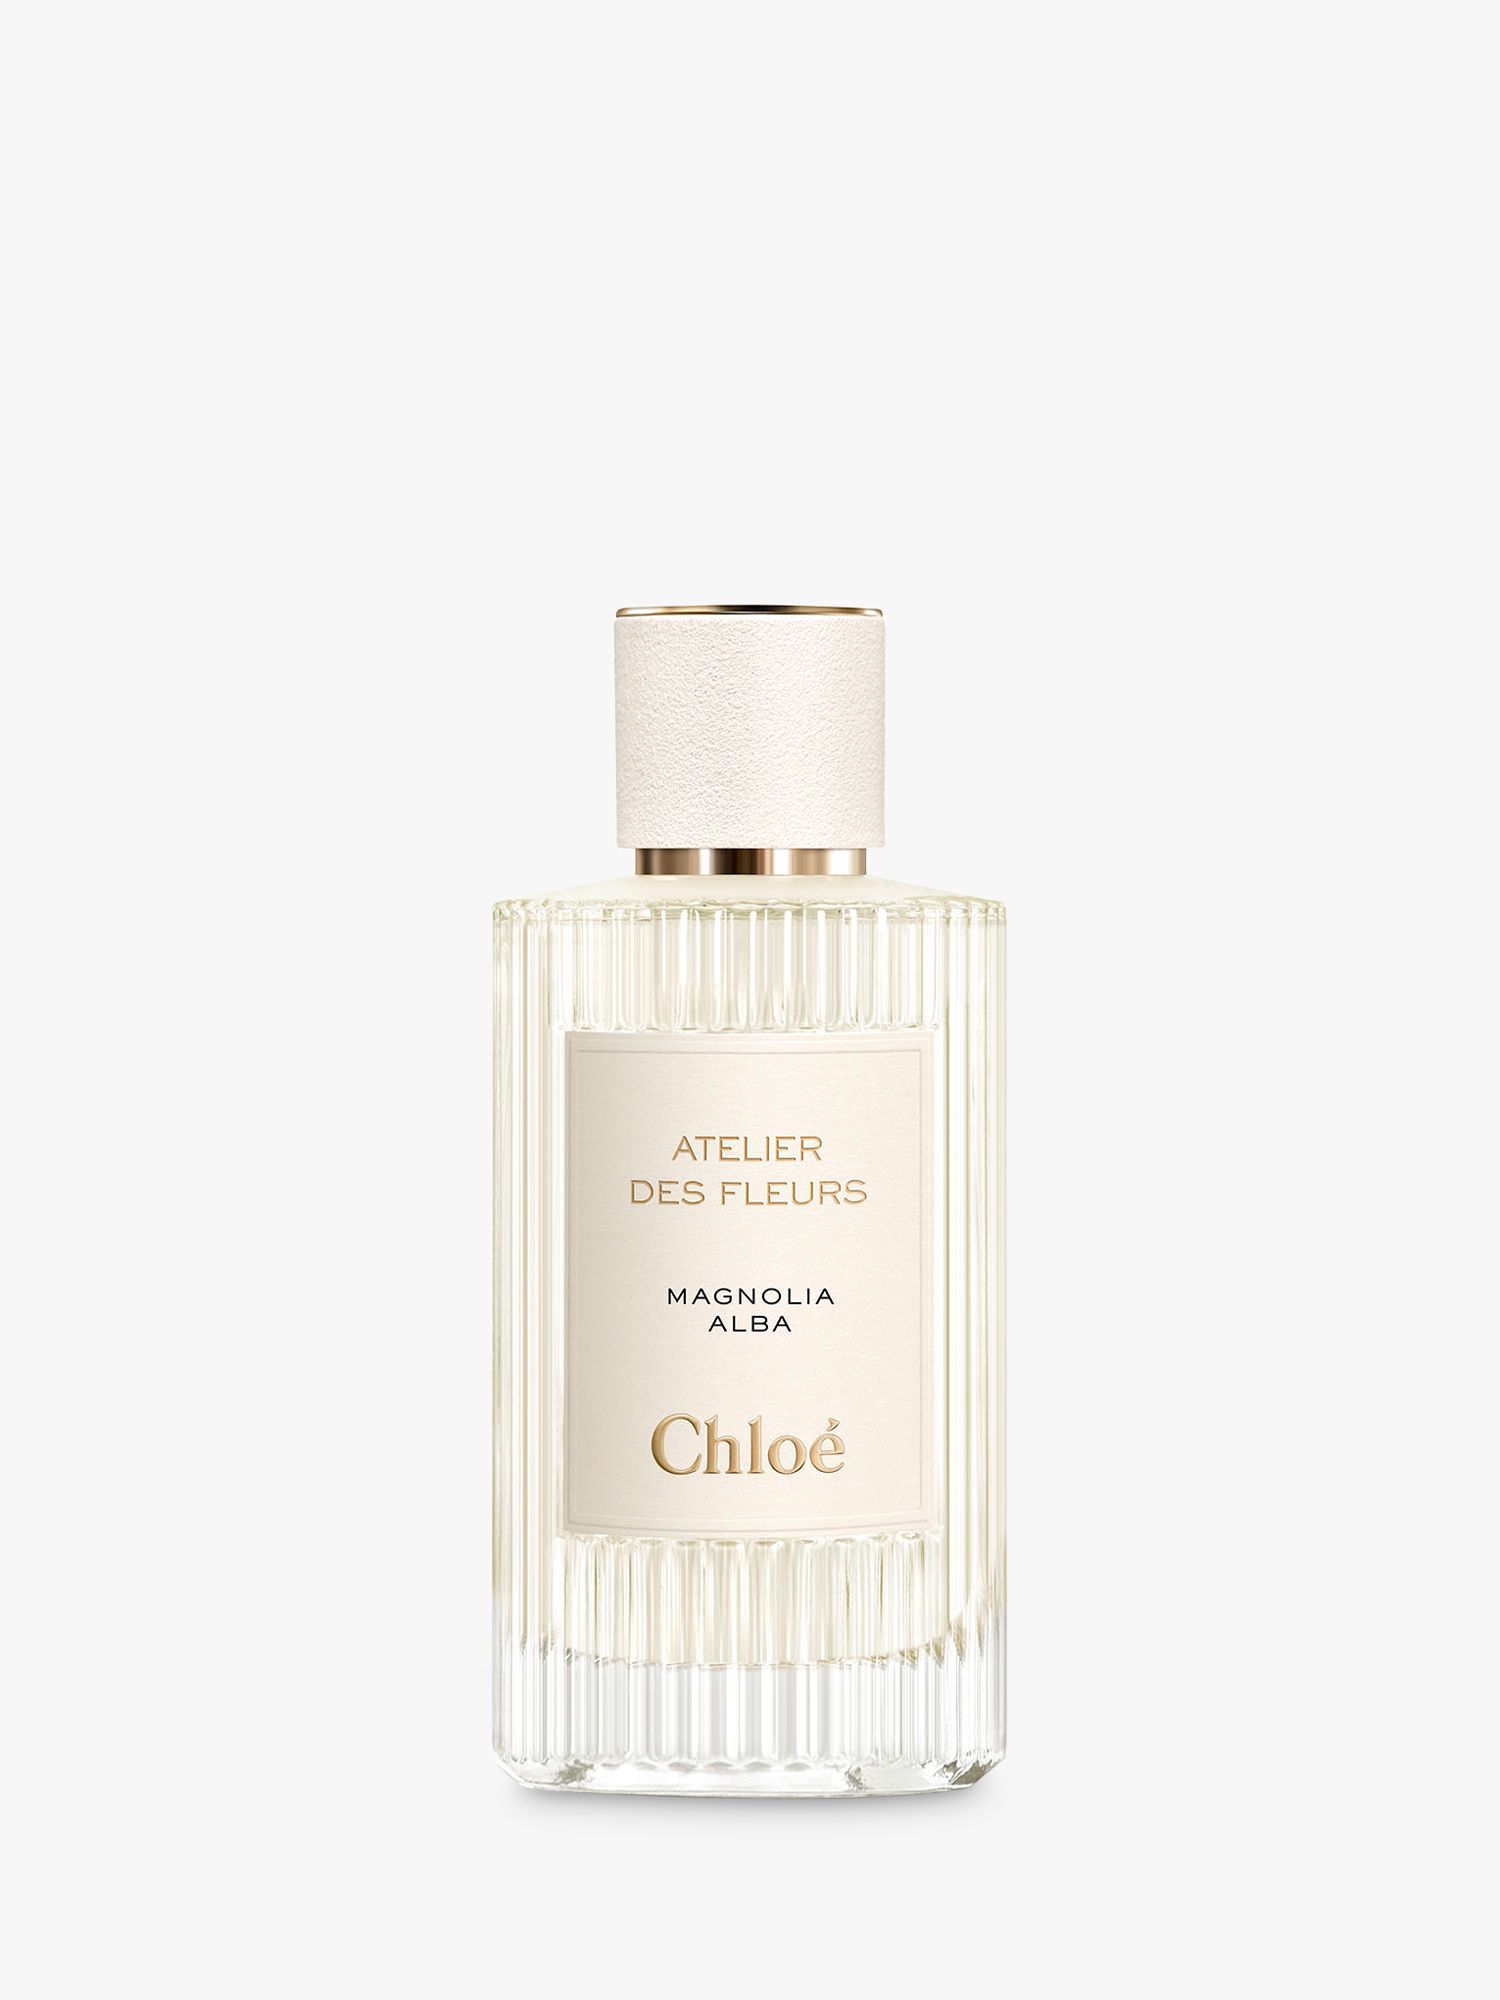 Chloé Atelier des Fleurs Magnolia Alba Eau de Parfum, 150ml